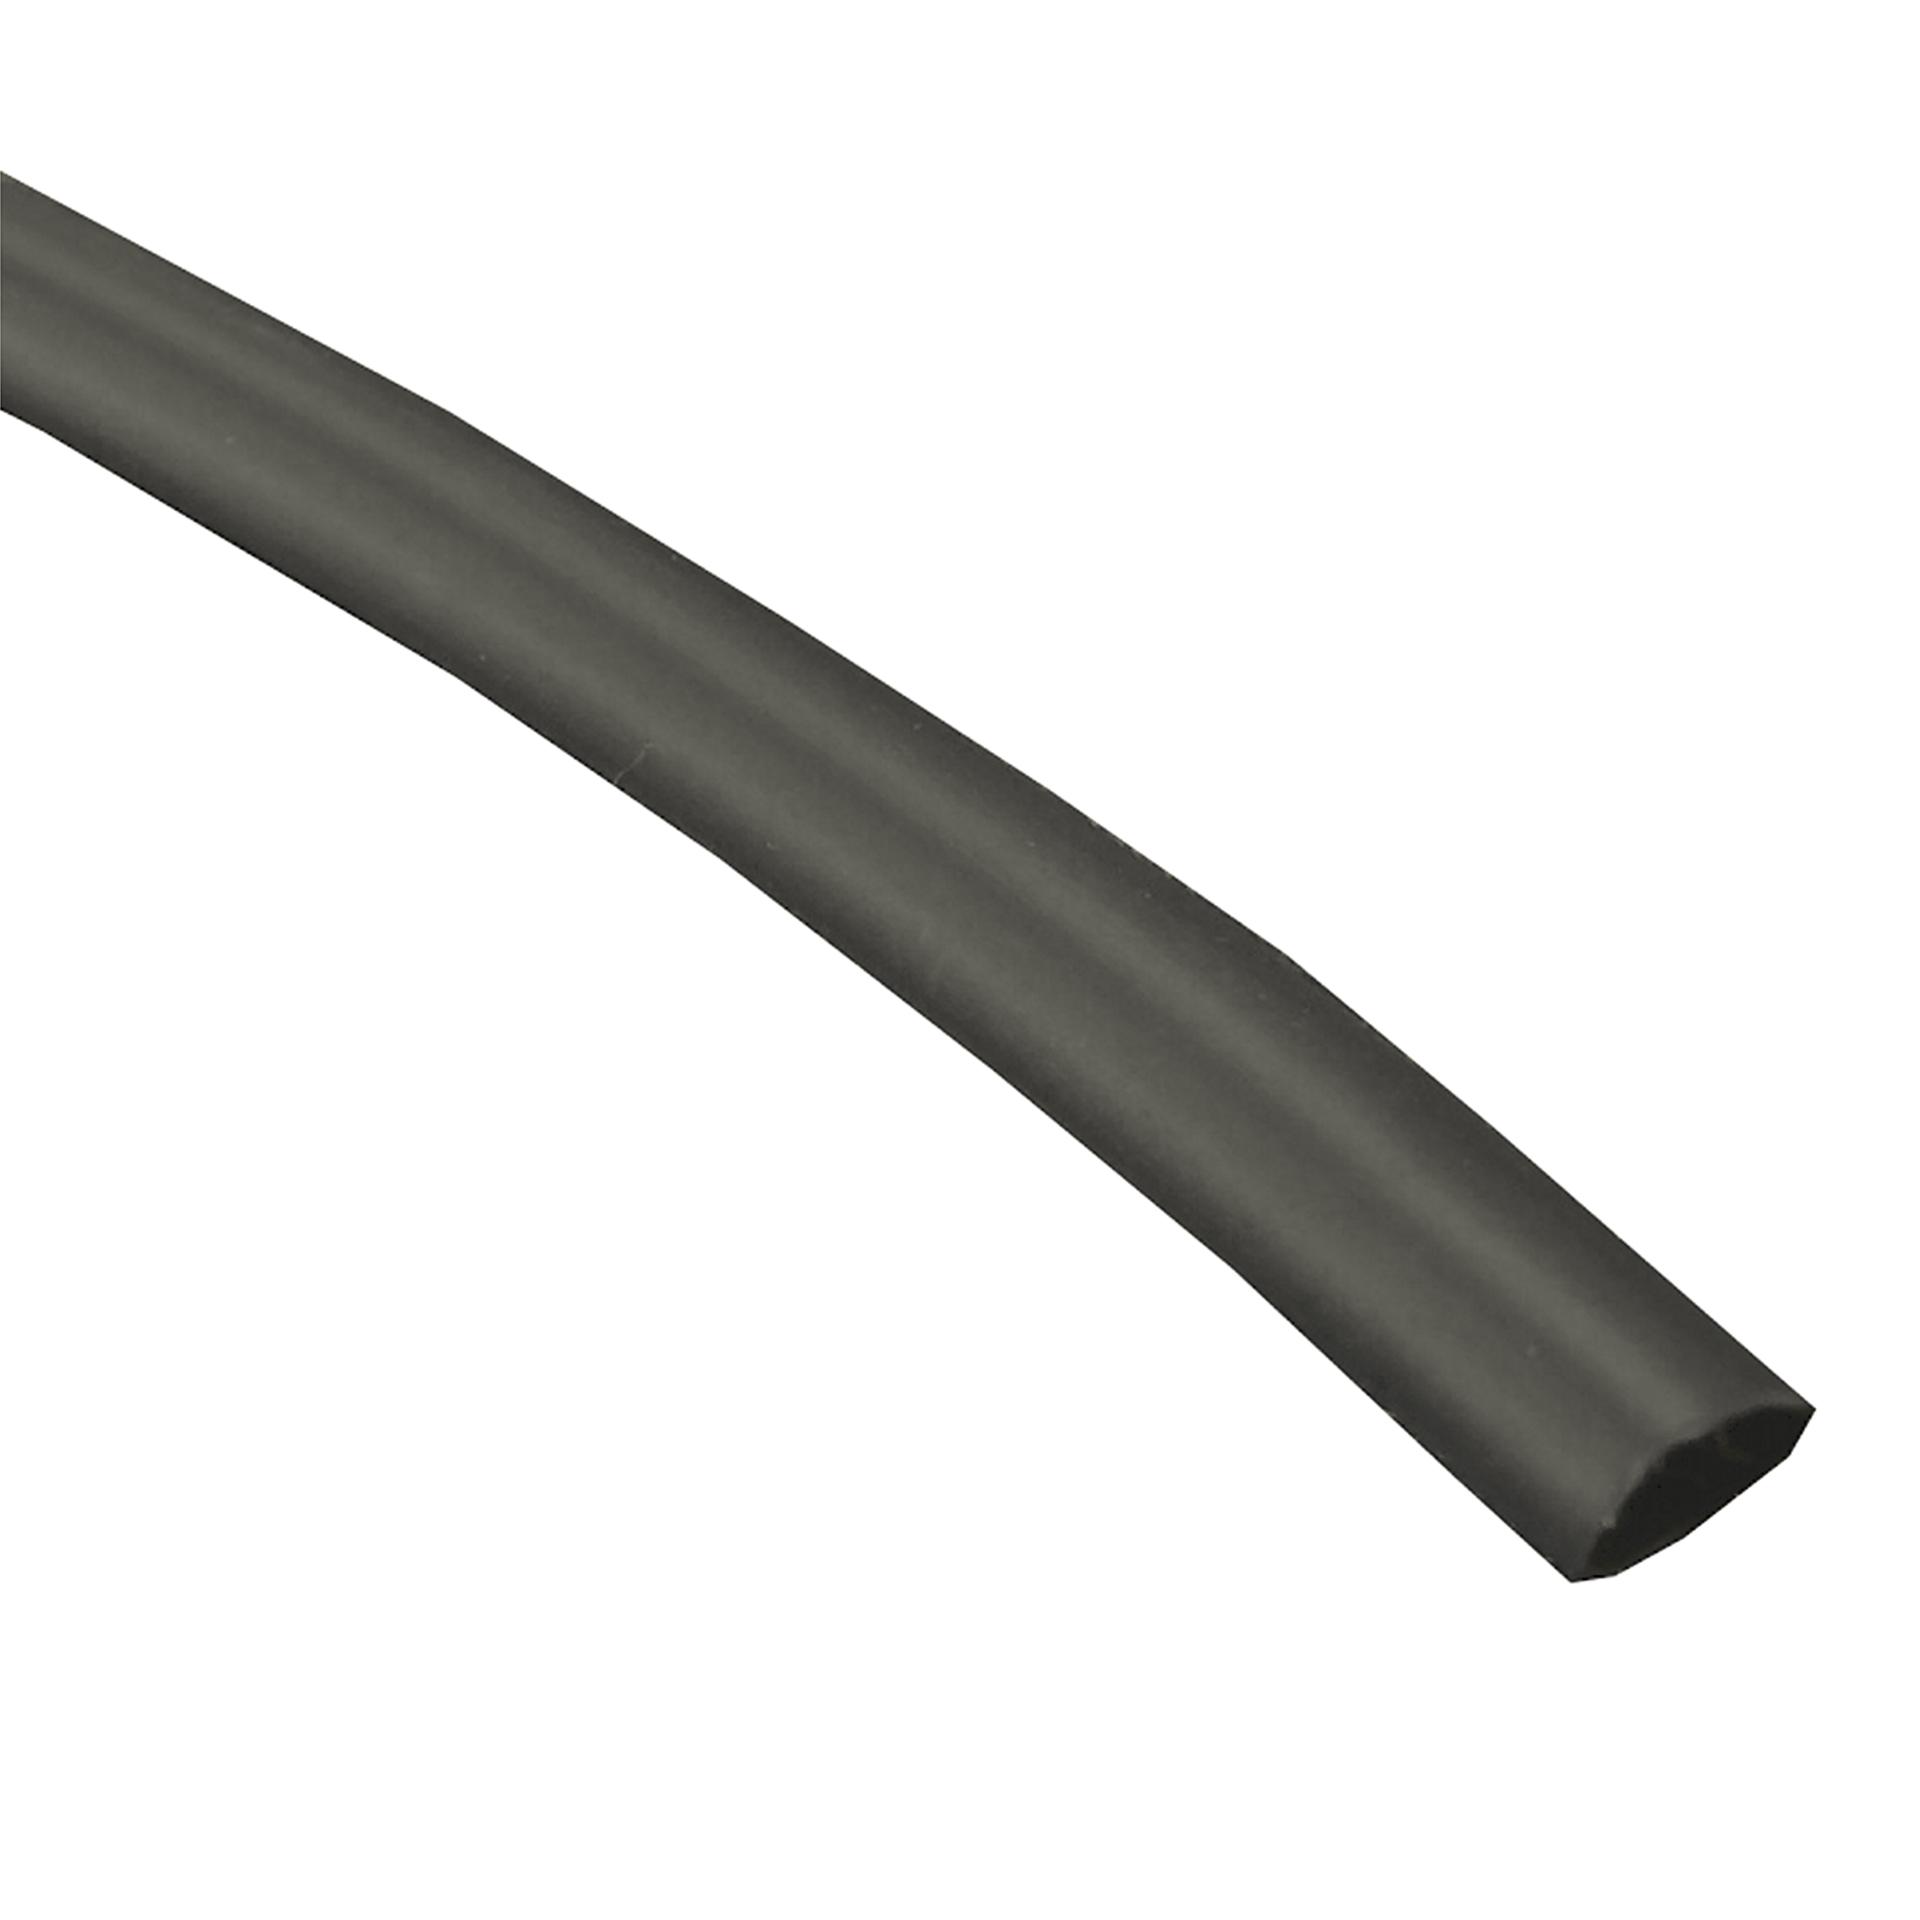 Hellerman Krimpkous lengte 1,22mtr zwart 3/32inch 2,4-1,2mm 10st. 5942110